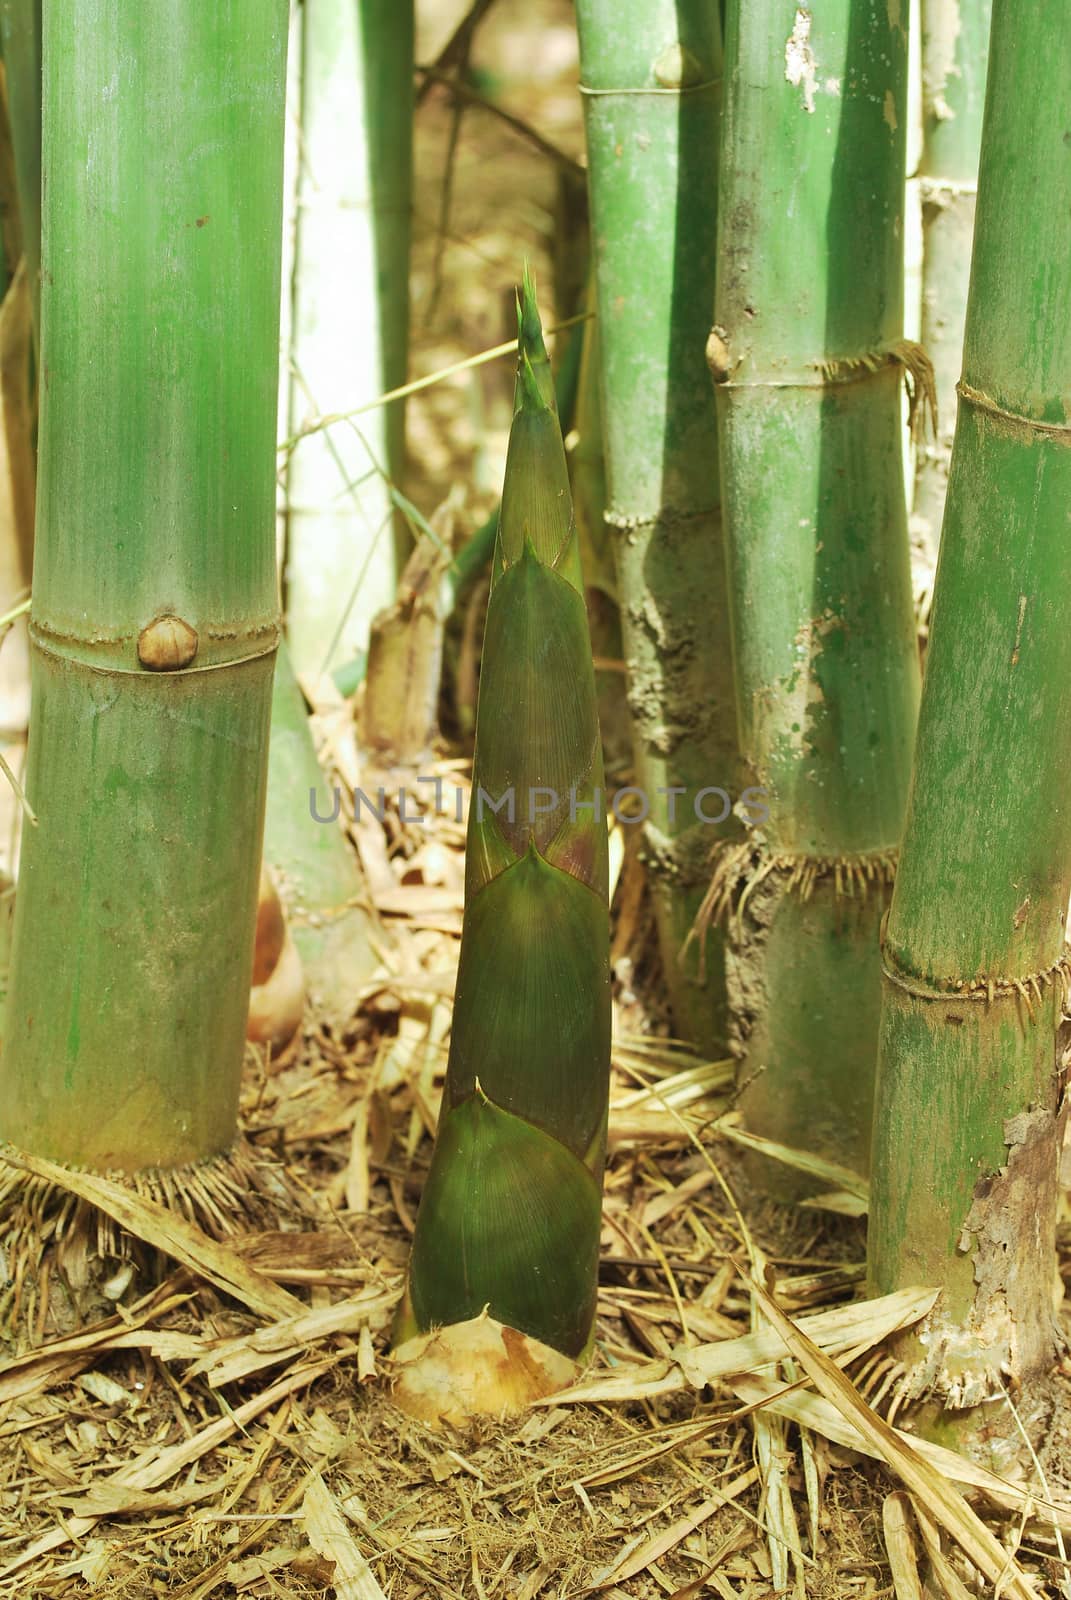 Thai bamboo grove is a farmer's career.